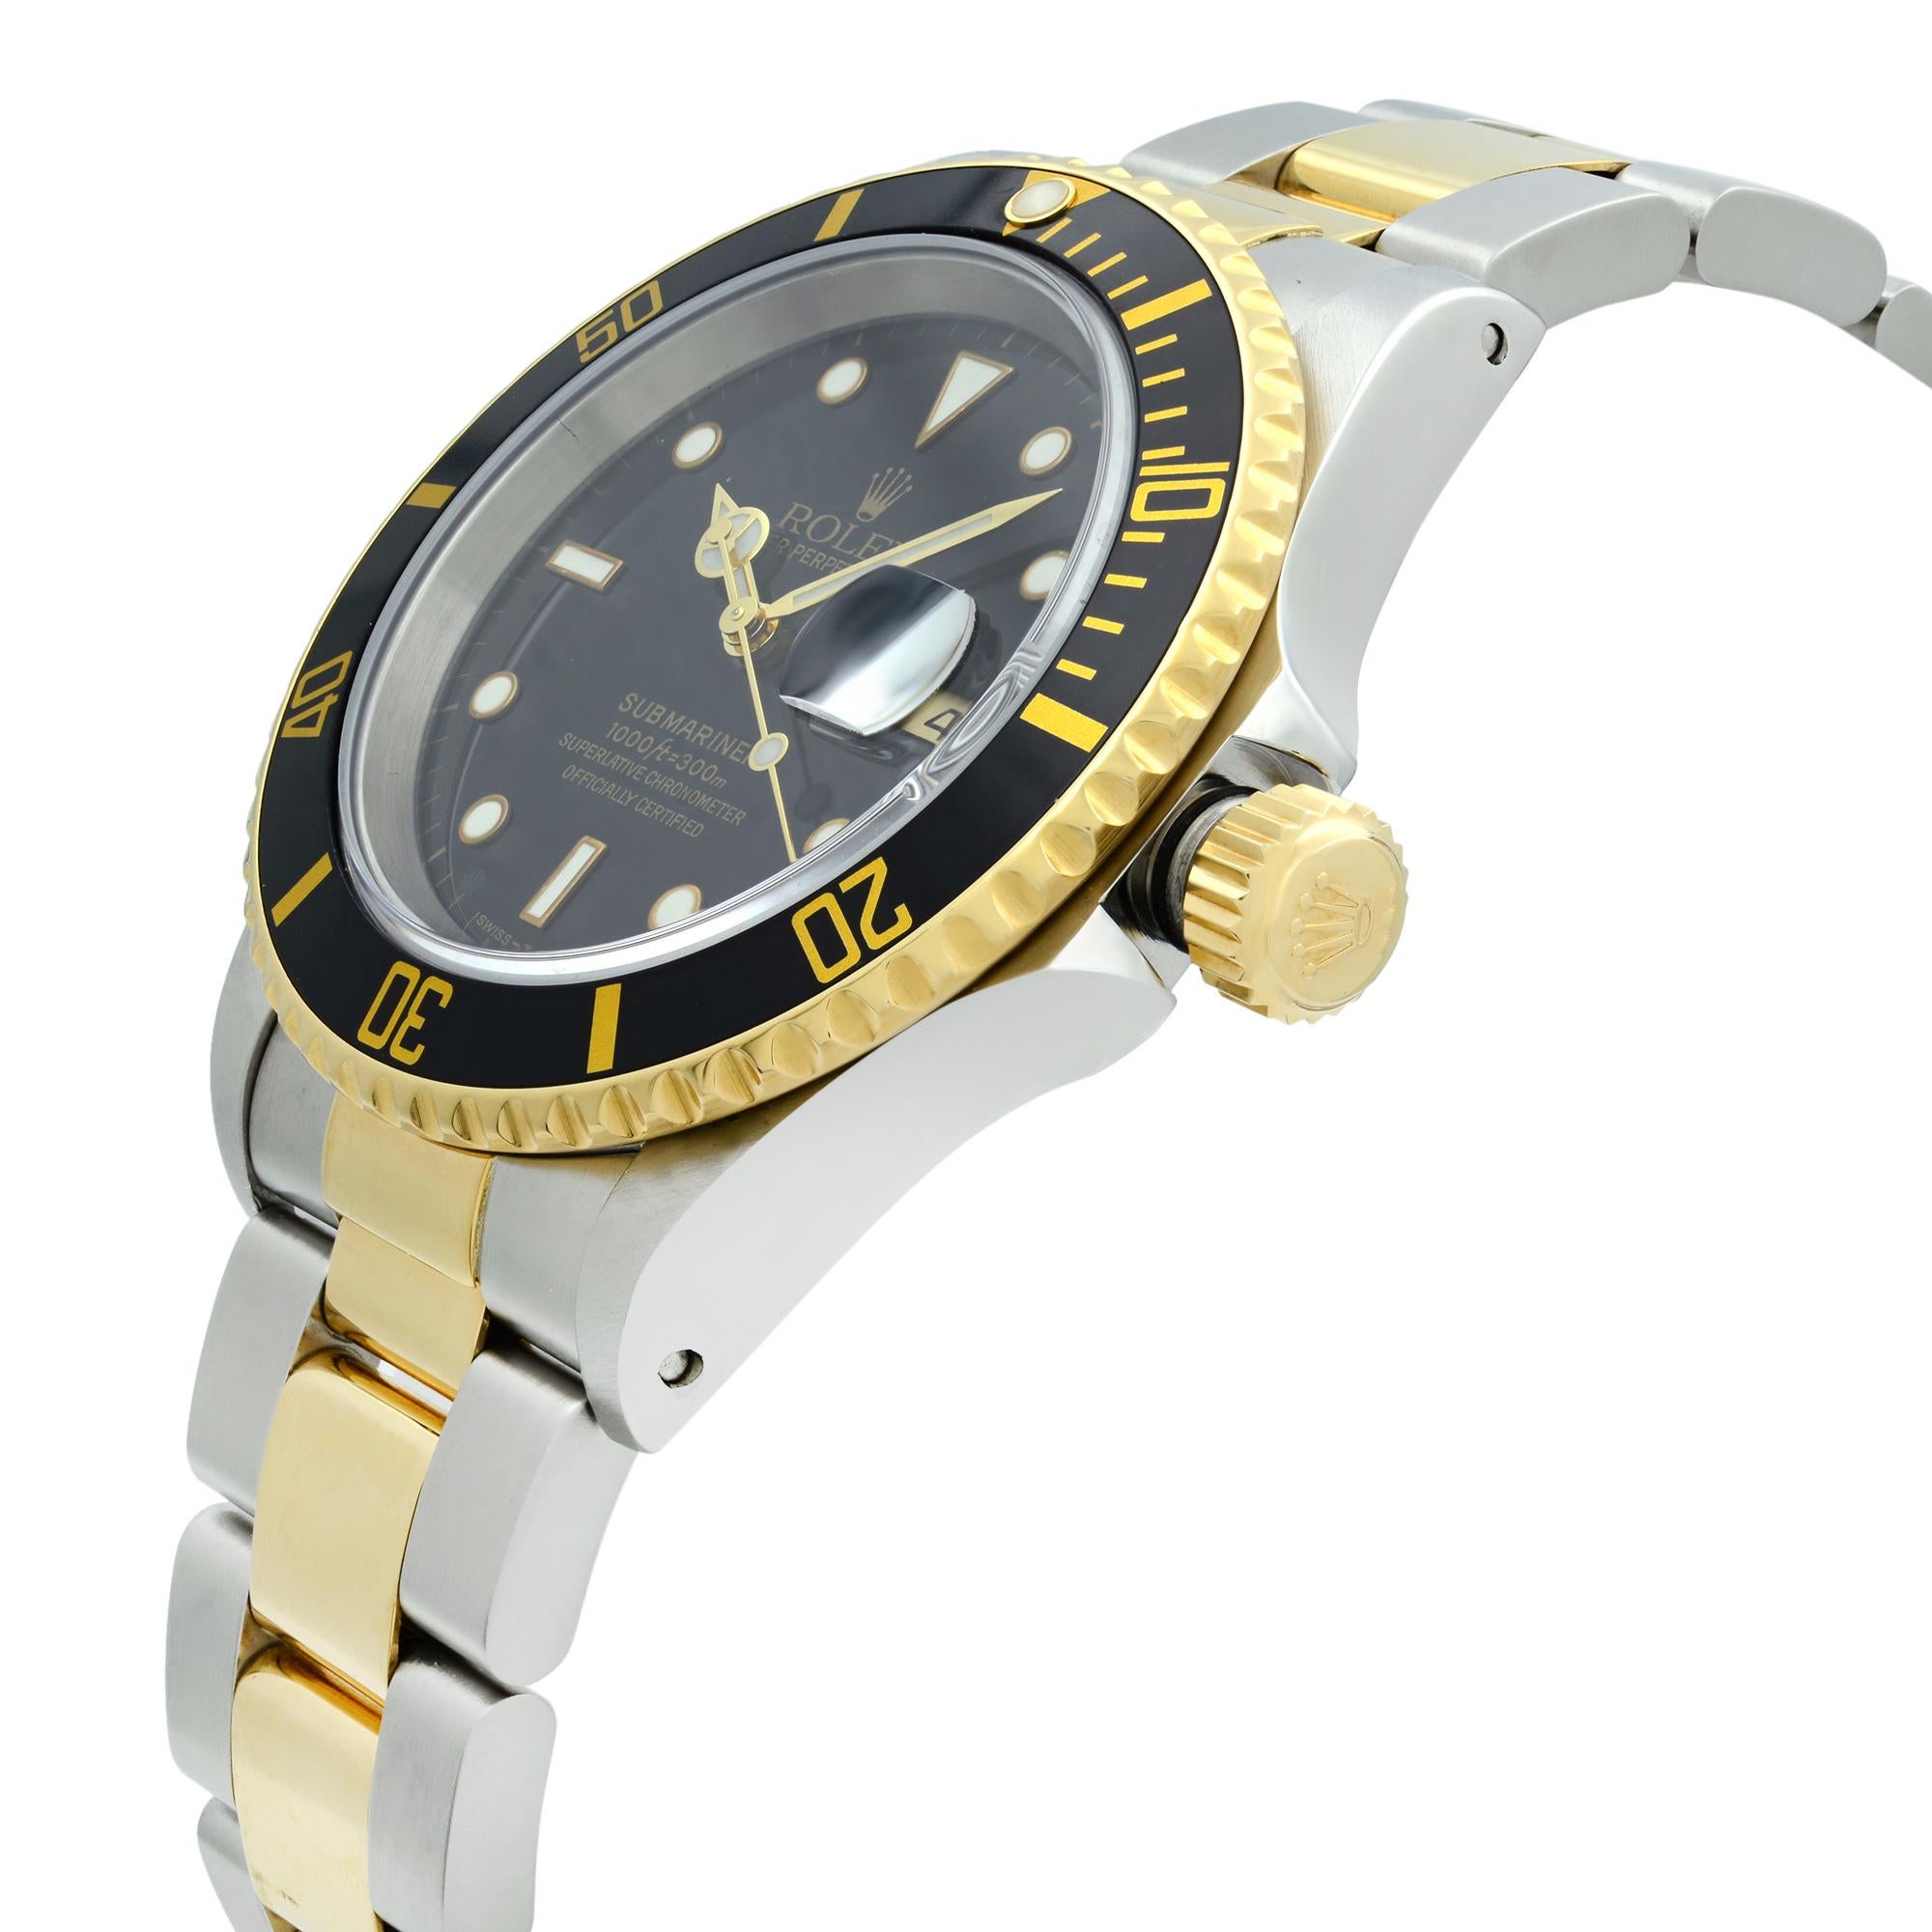 holex watch price